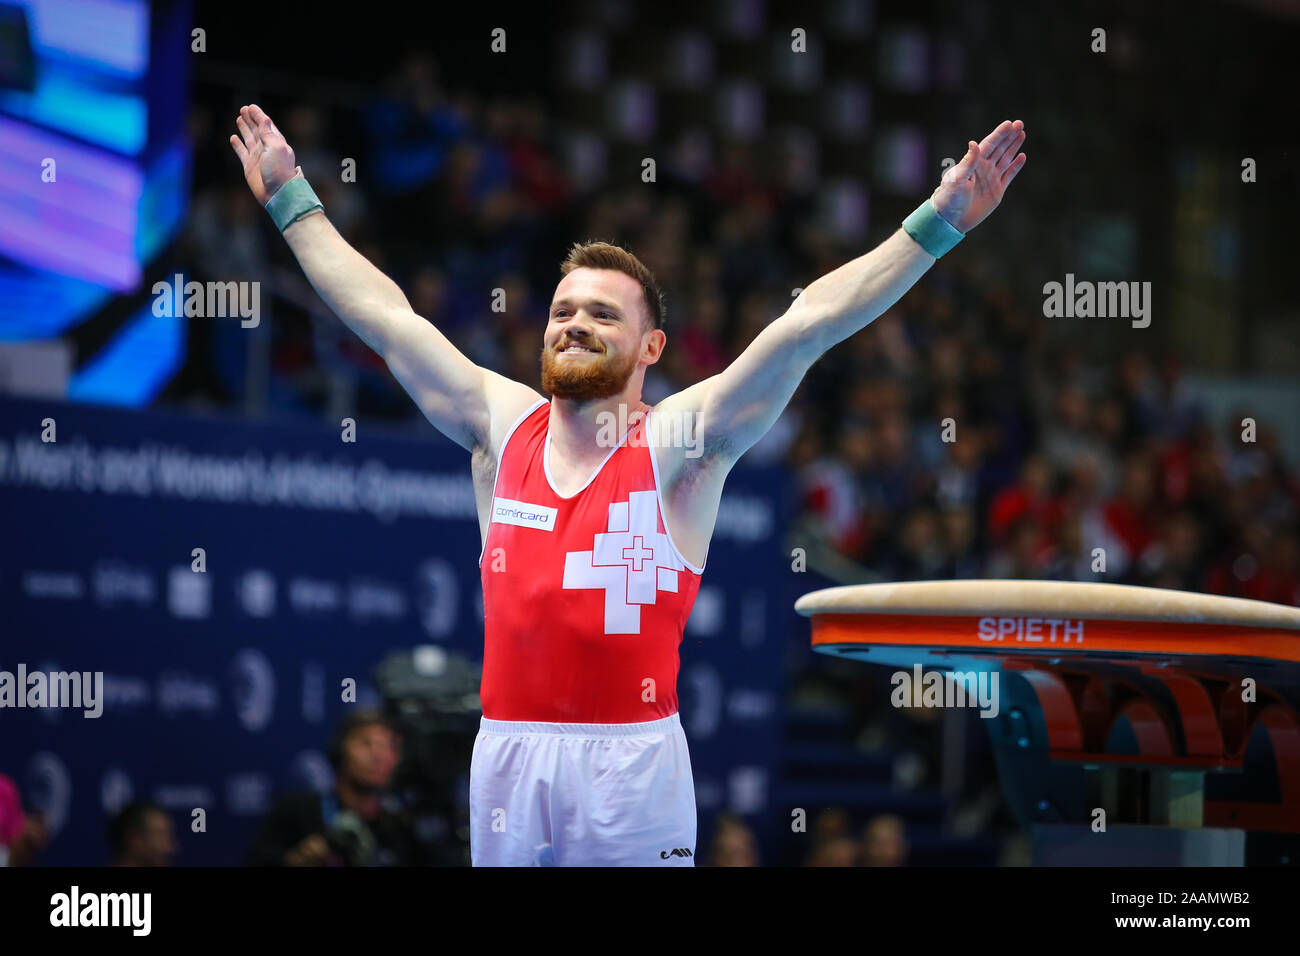 Szczecin, Pologne, le 14 avril 2019 : Benjamin Gischard de la Suisse pendant l'Championnats de gymnastique artistique Banque D'Images